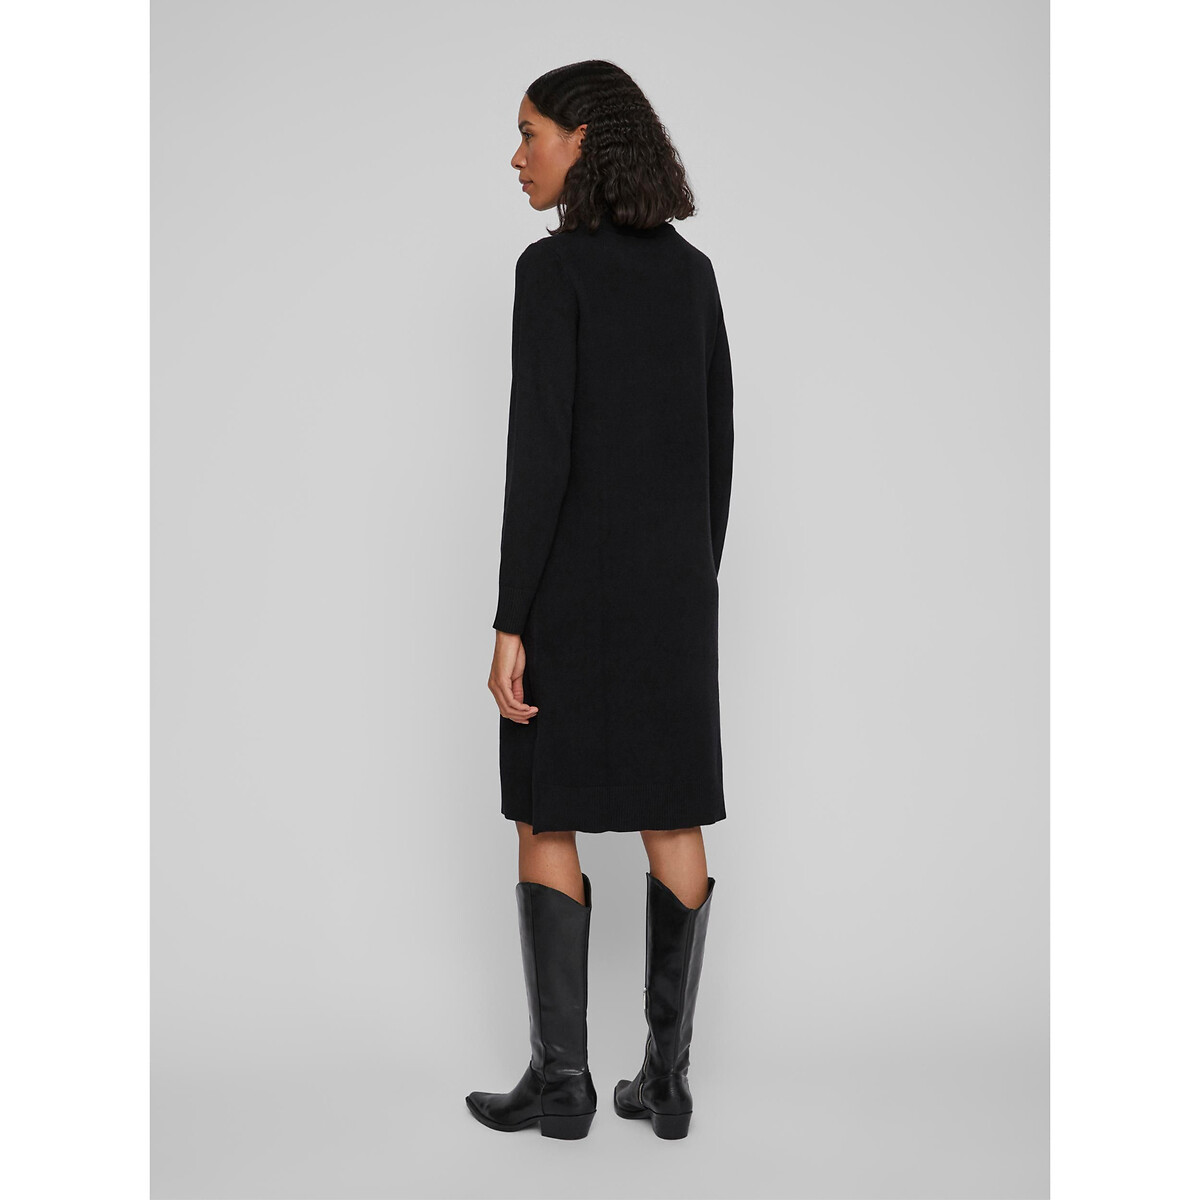 Платье-пуловер VILA Платье-пуловер Миди из тонкого трикотажа воротник-стойка XS черный, размер XS - фото 5